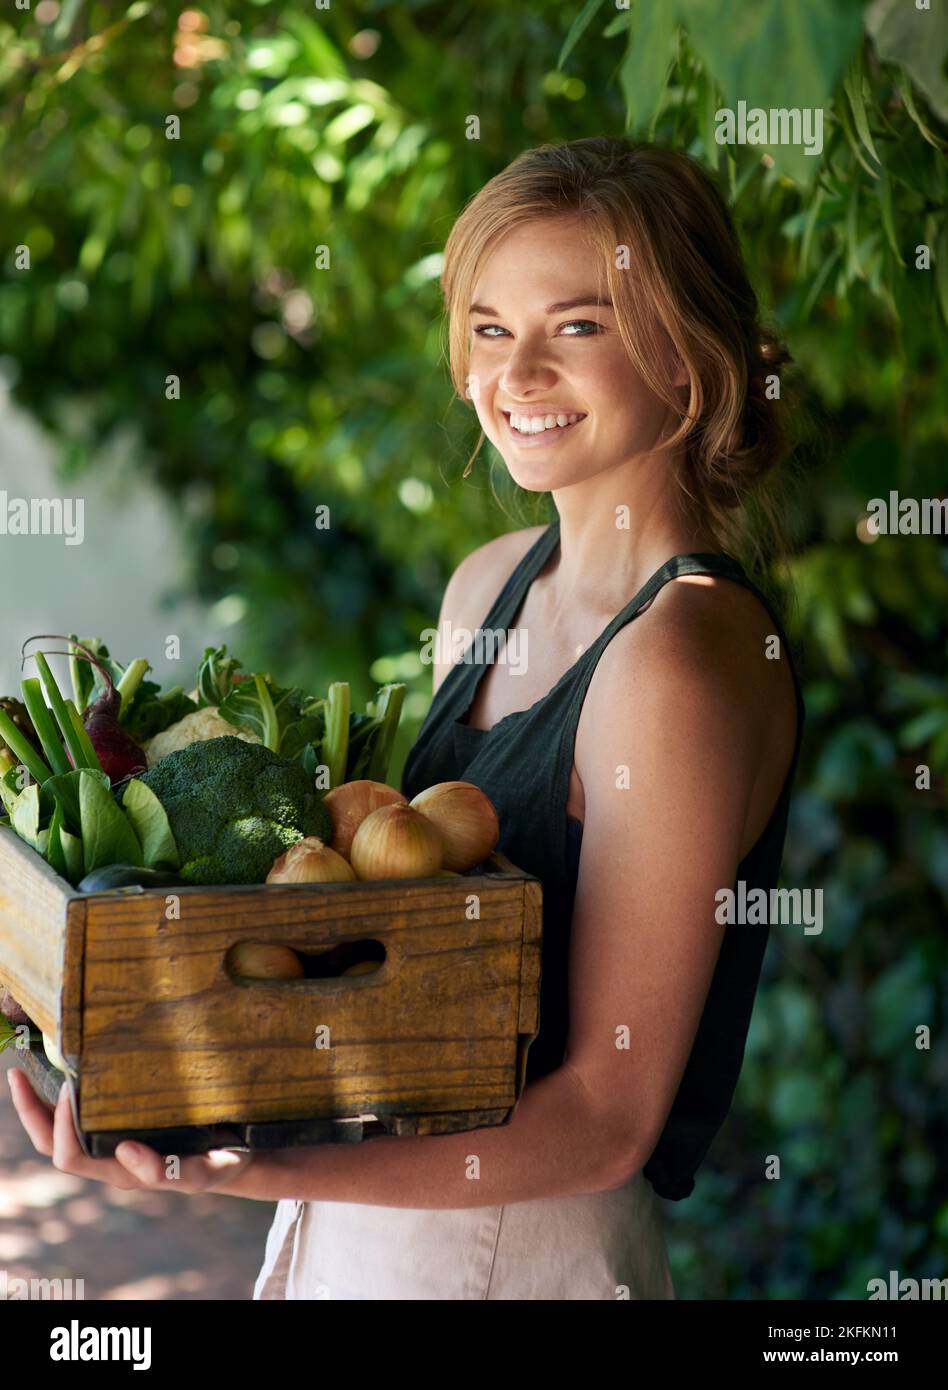 Nichts schmeckt so gut wie hausgemachten Gemüse. Eine junge Frau, die eine Kiste mit Gemüse im Freien hält. Stockfoto